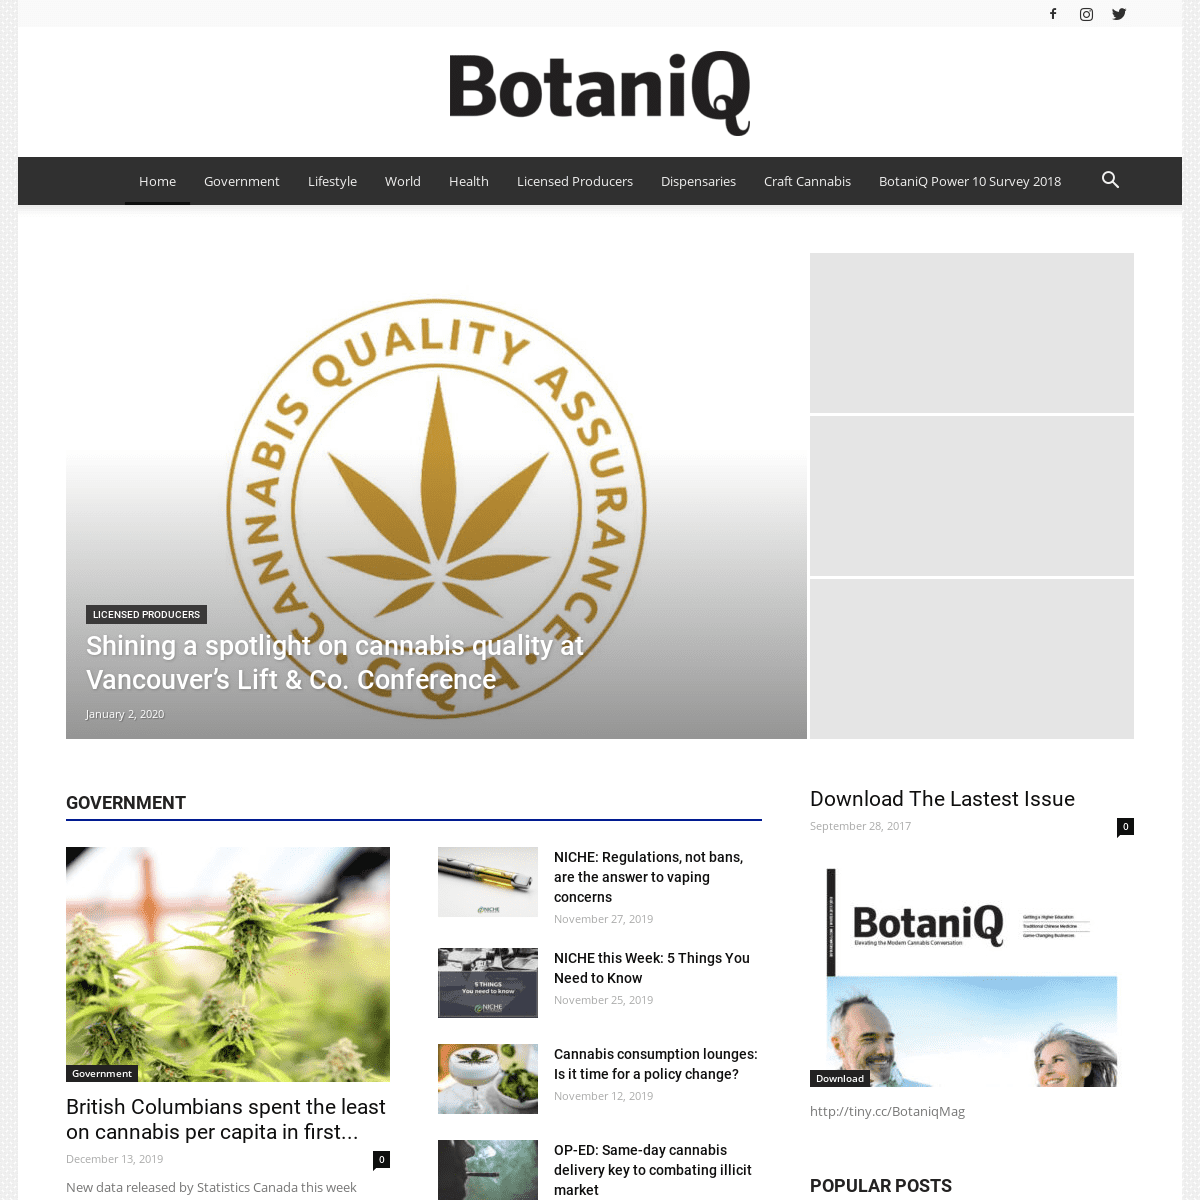 A complete backup of botaniqmag.com